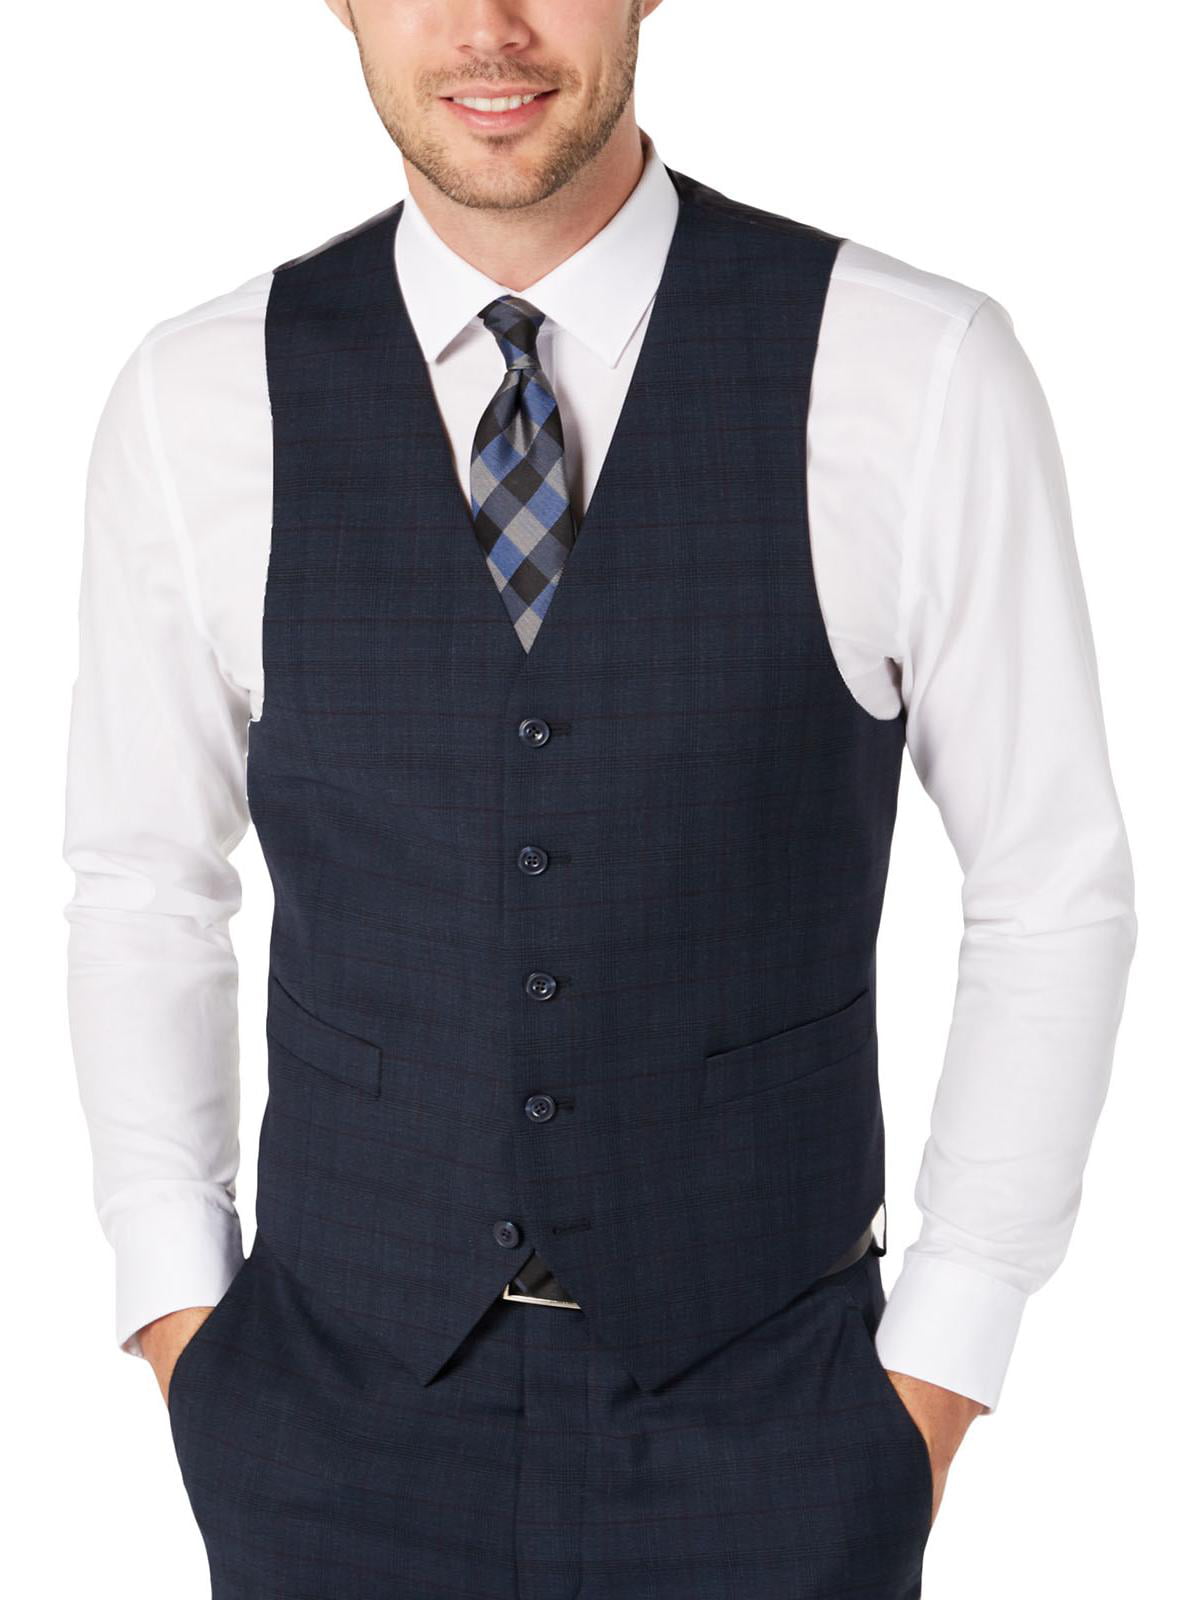 Tommy Hilfiger Mens Wool Blend Plaid Suit Blue S Walmart.com